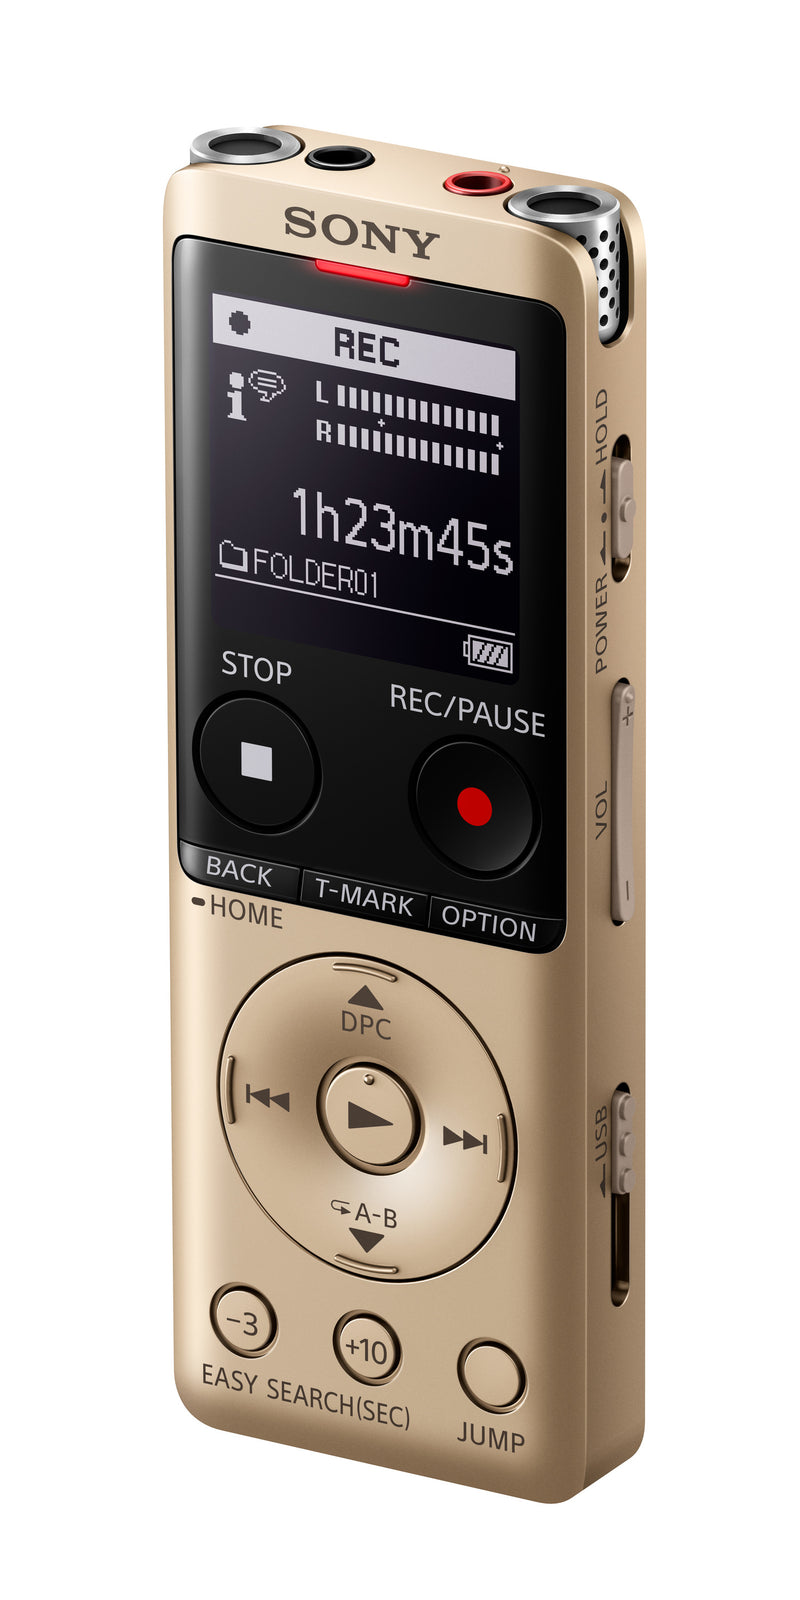 SONY UX570 Voice Recorder